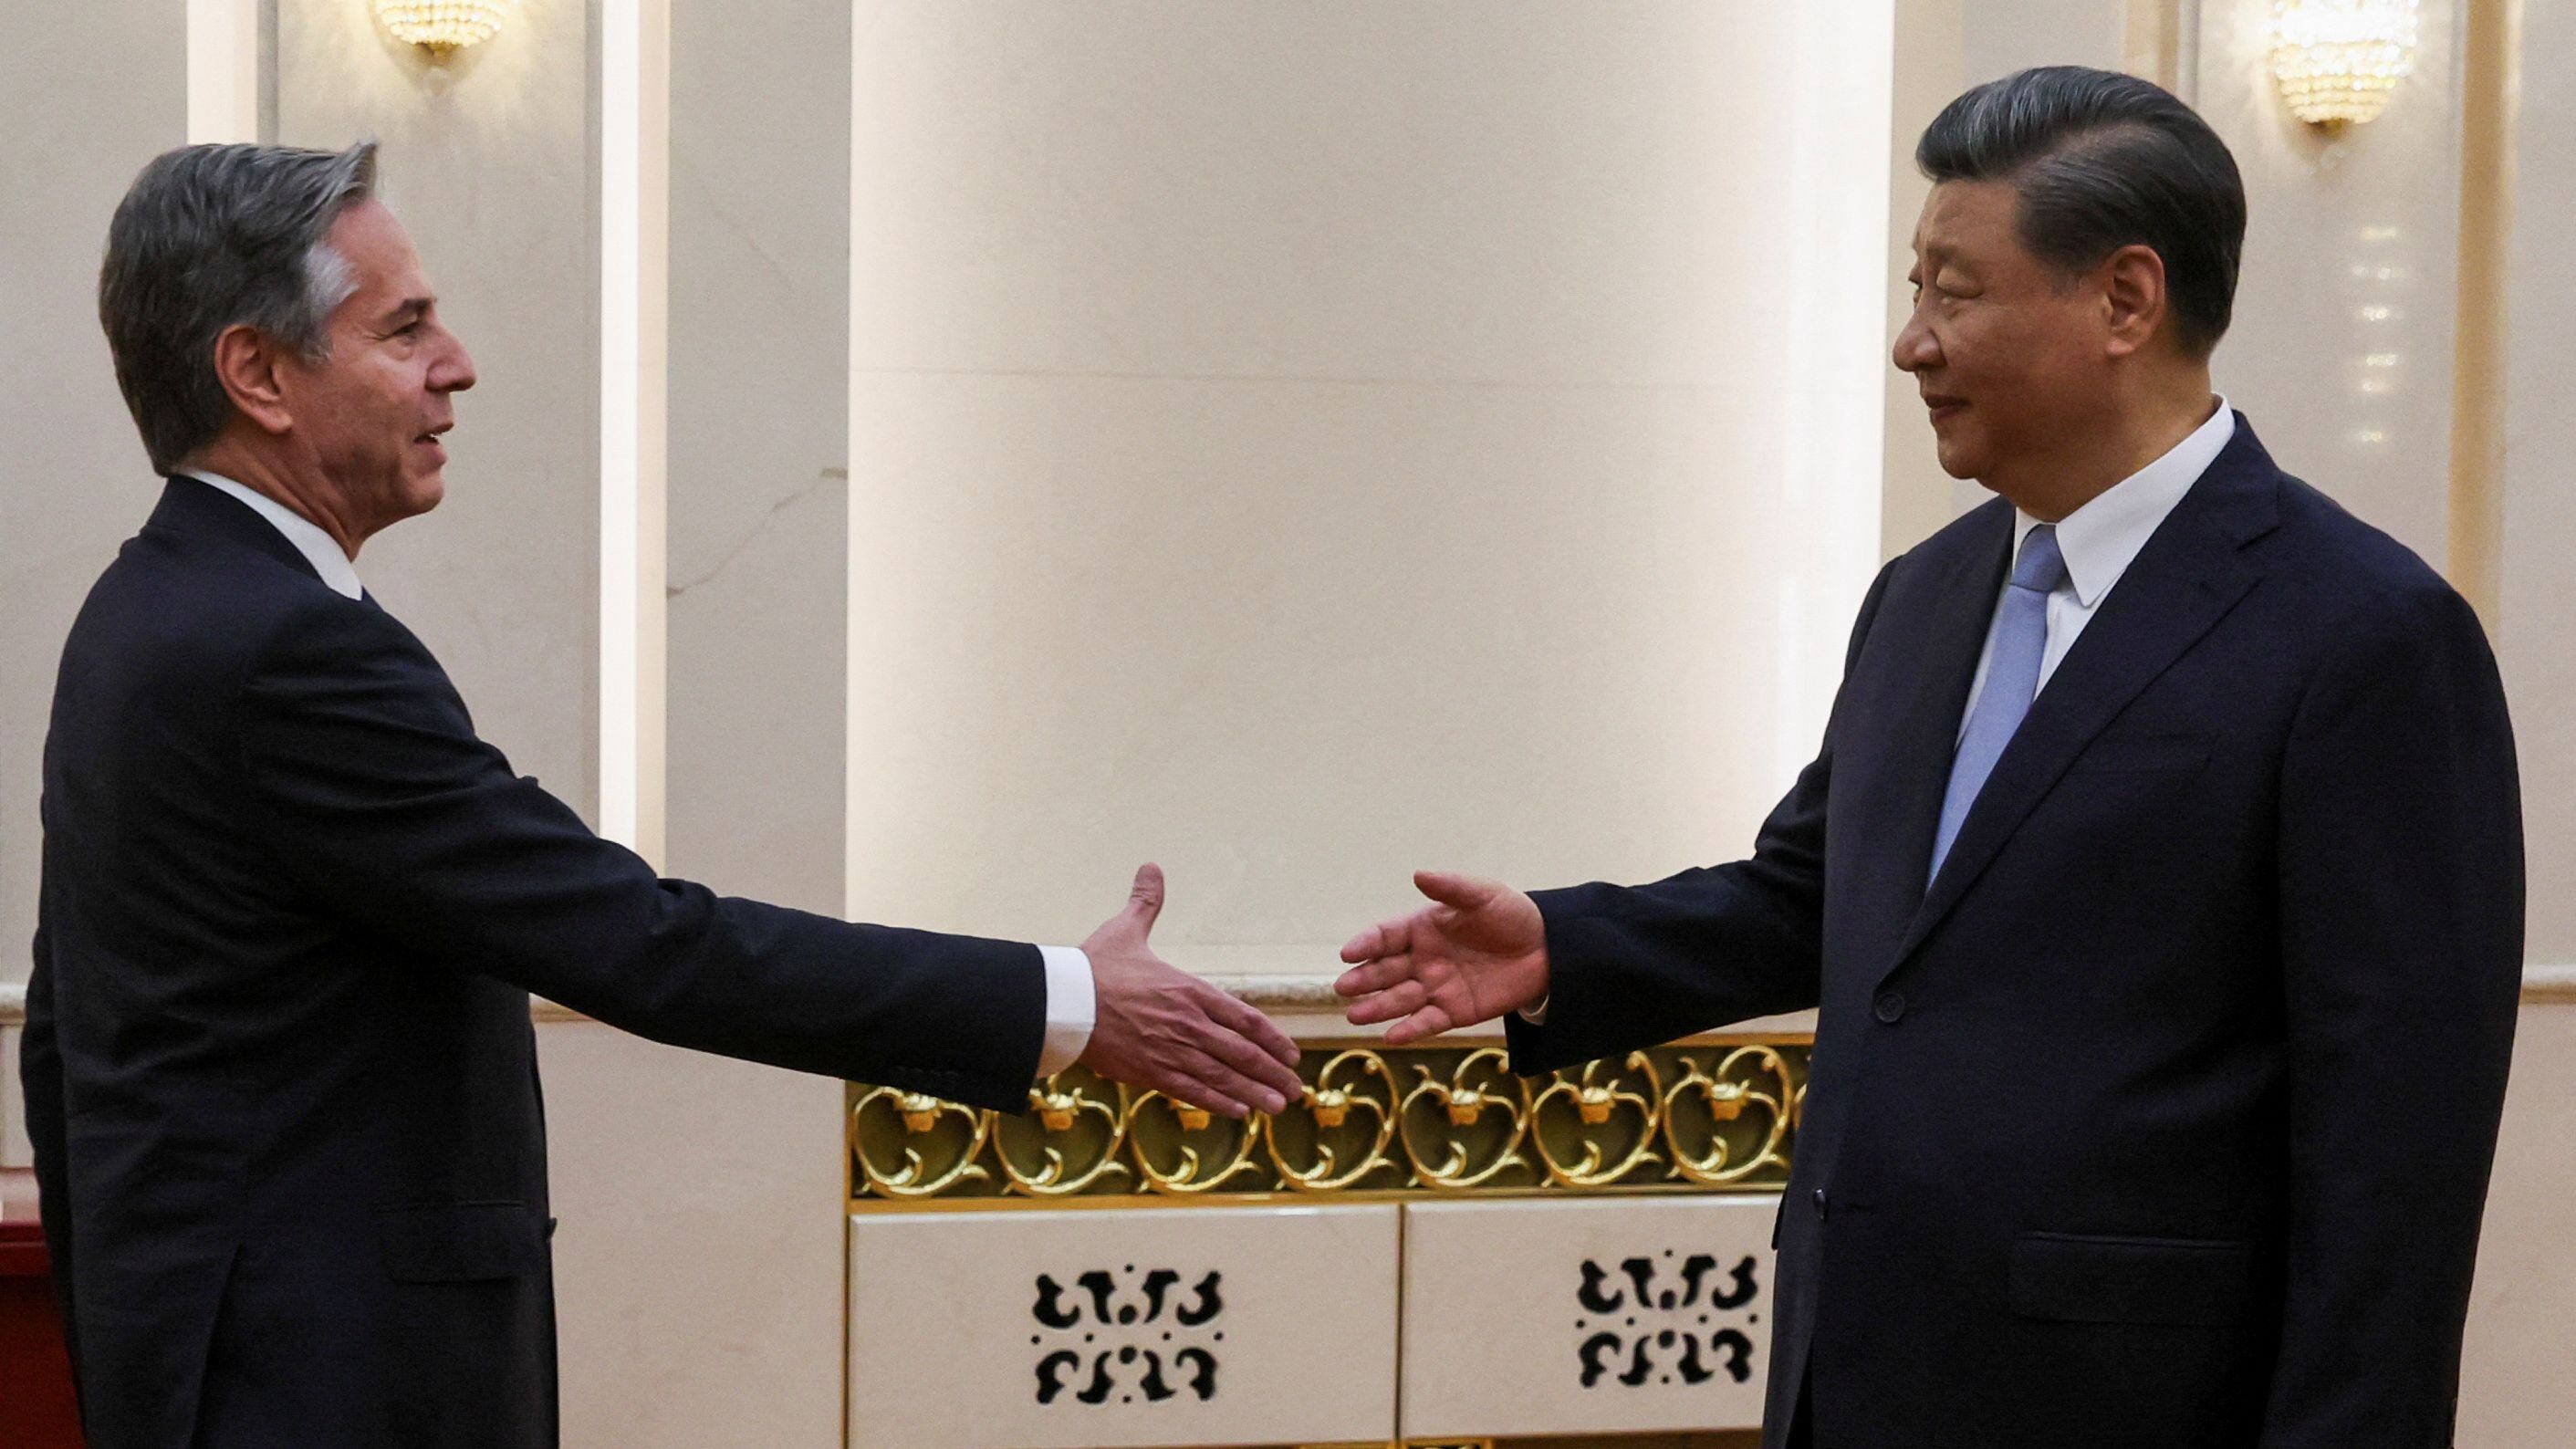 El secretario de Estado norteamericano, Antony Blinken, en su encuentro con el presidente de China, Xi Jinping. REUTERS/Leah Millis/Pool